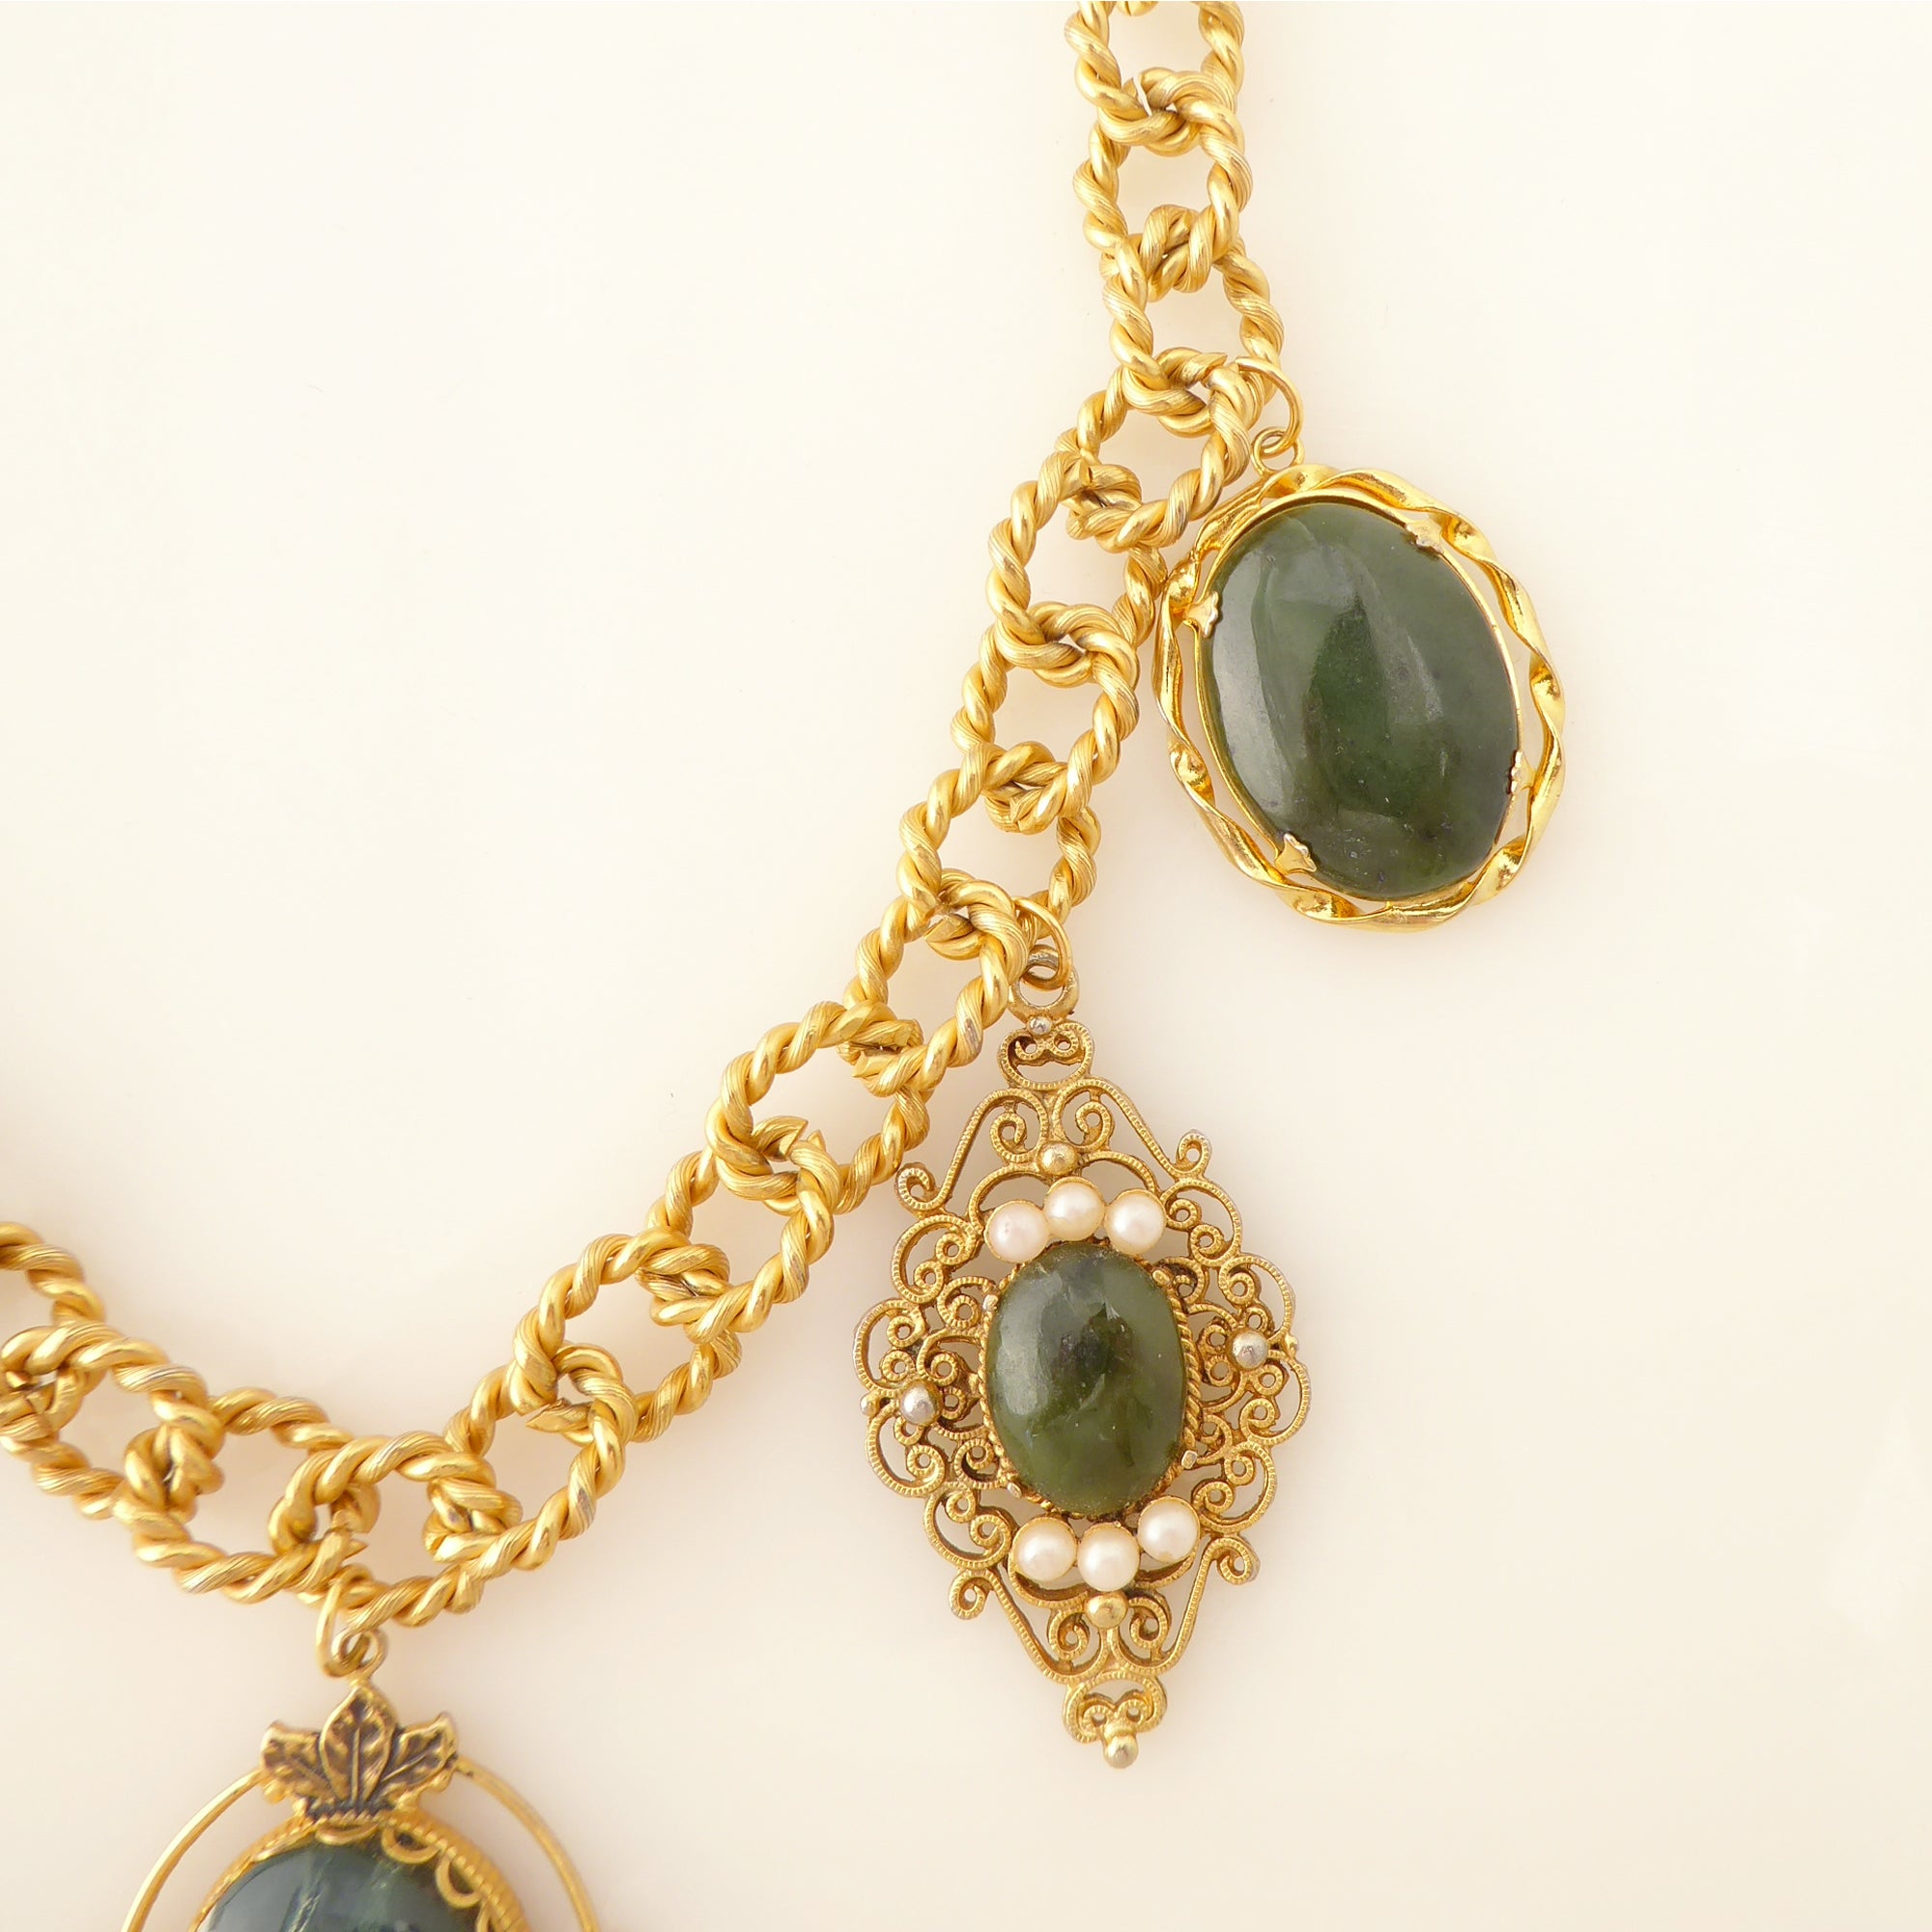 Green aventurine vintage necklace by Jenny Dayco 6